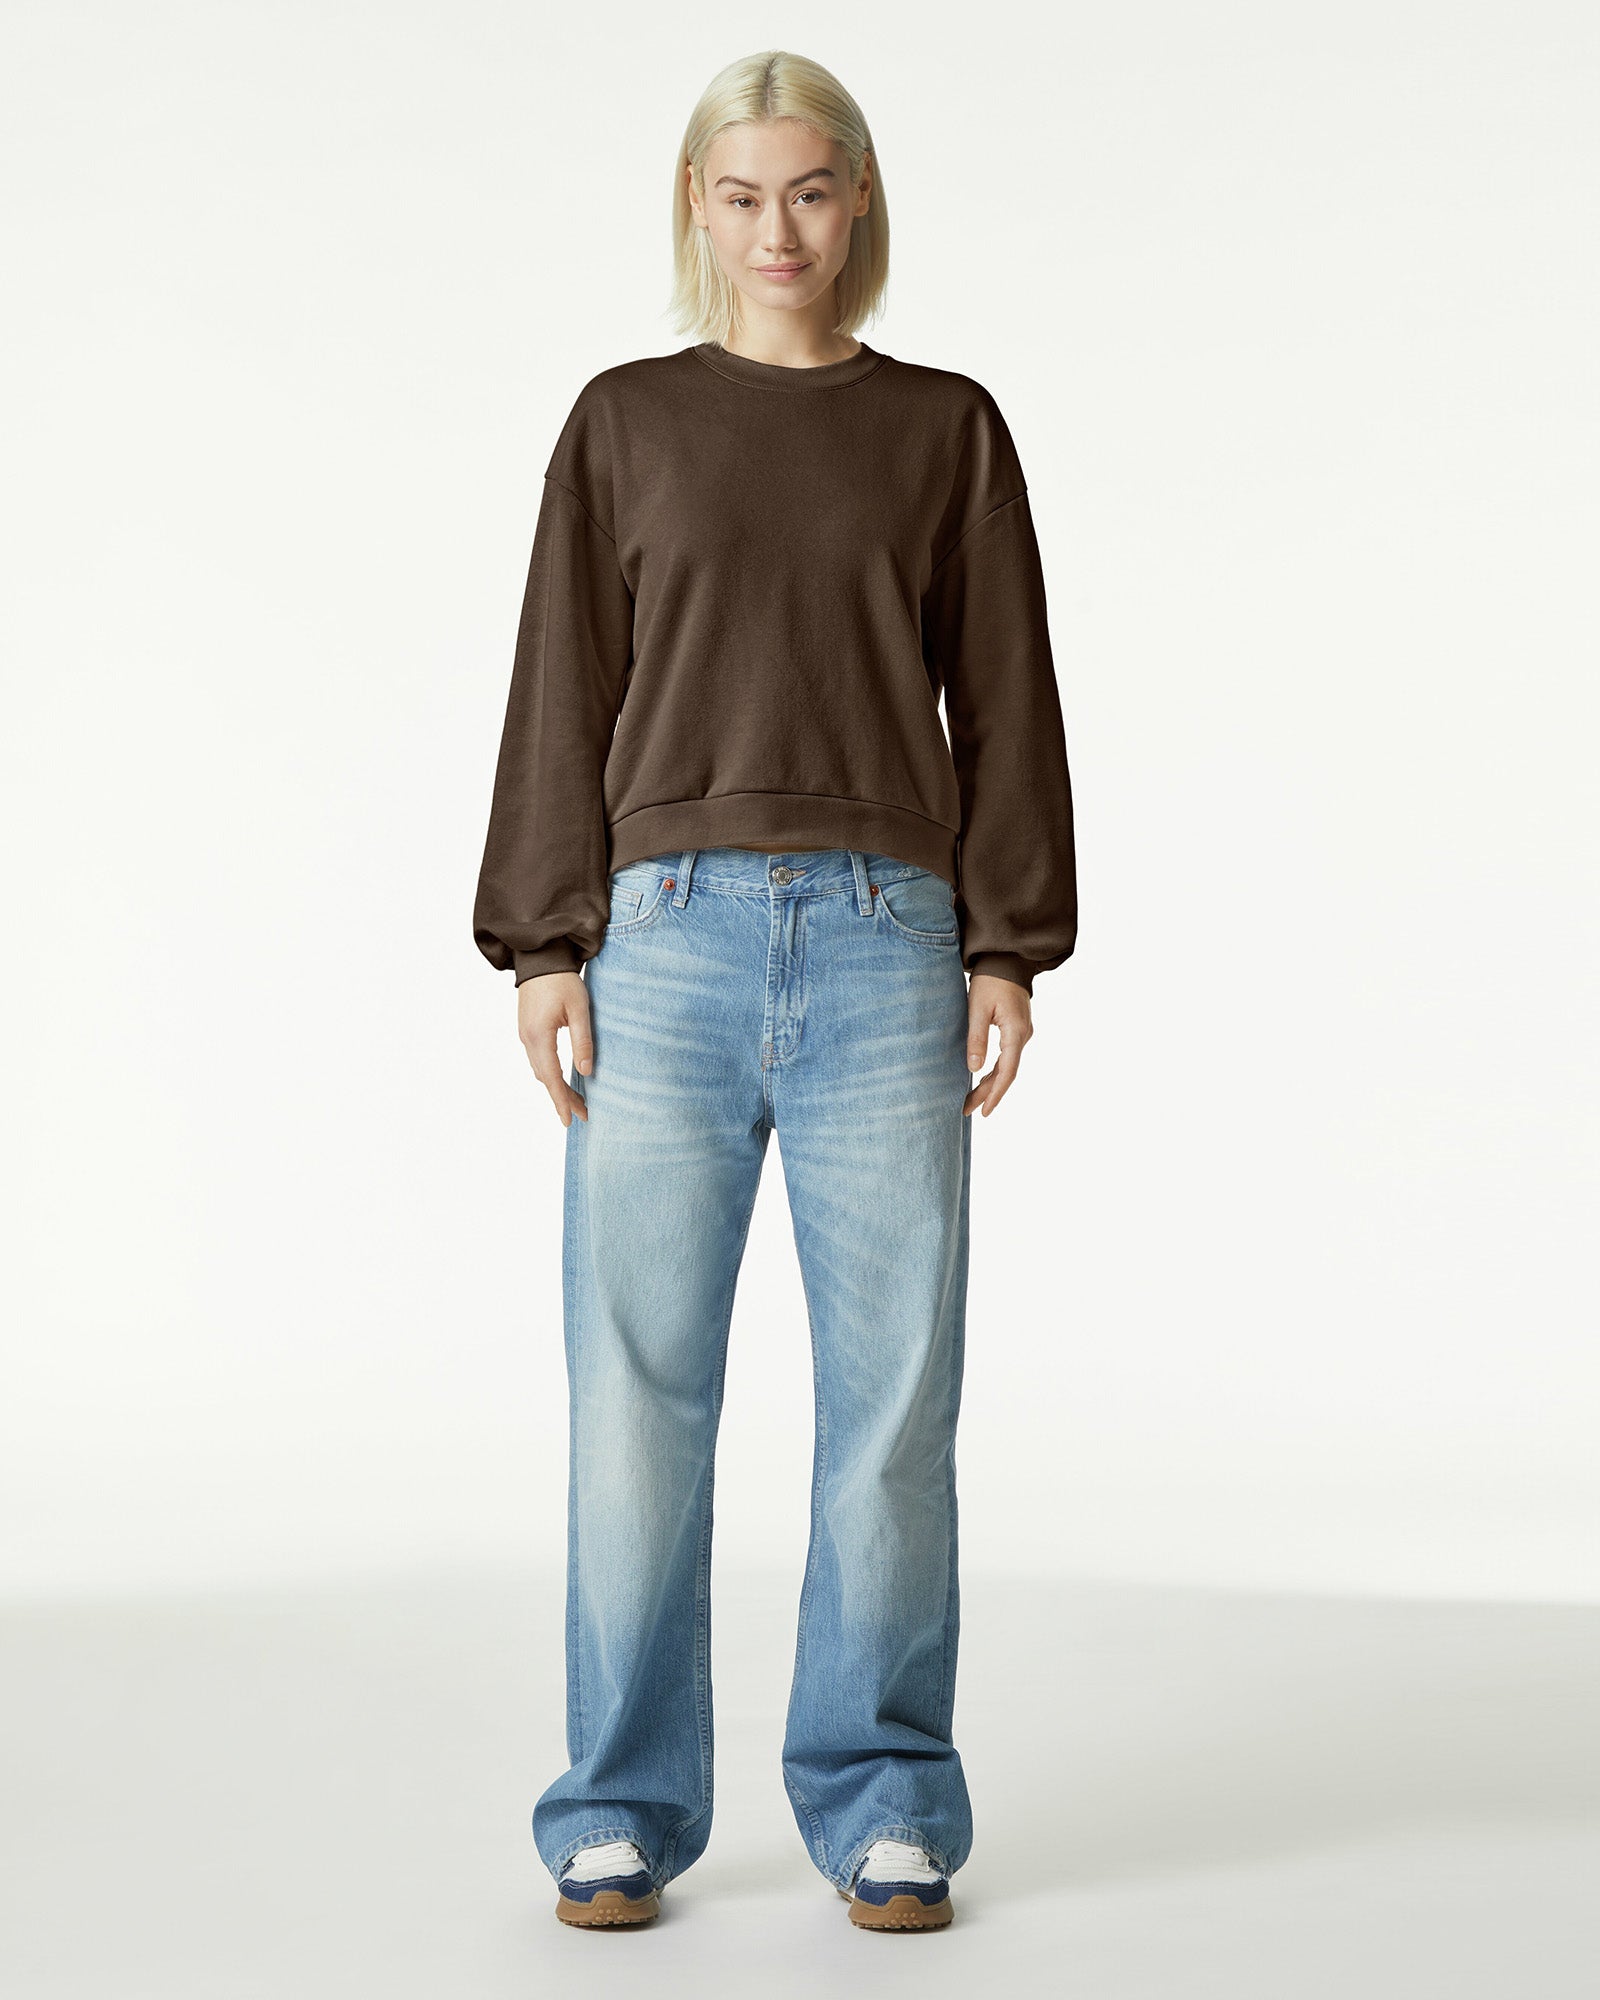 Reflex Women's Crewneck Pullover Sweatshirt